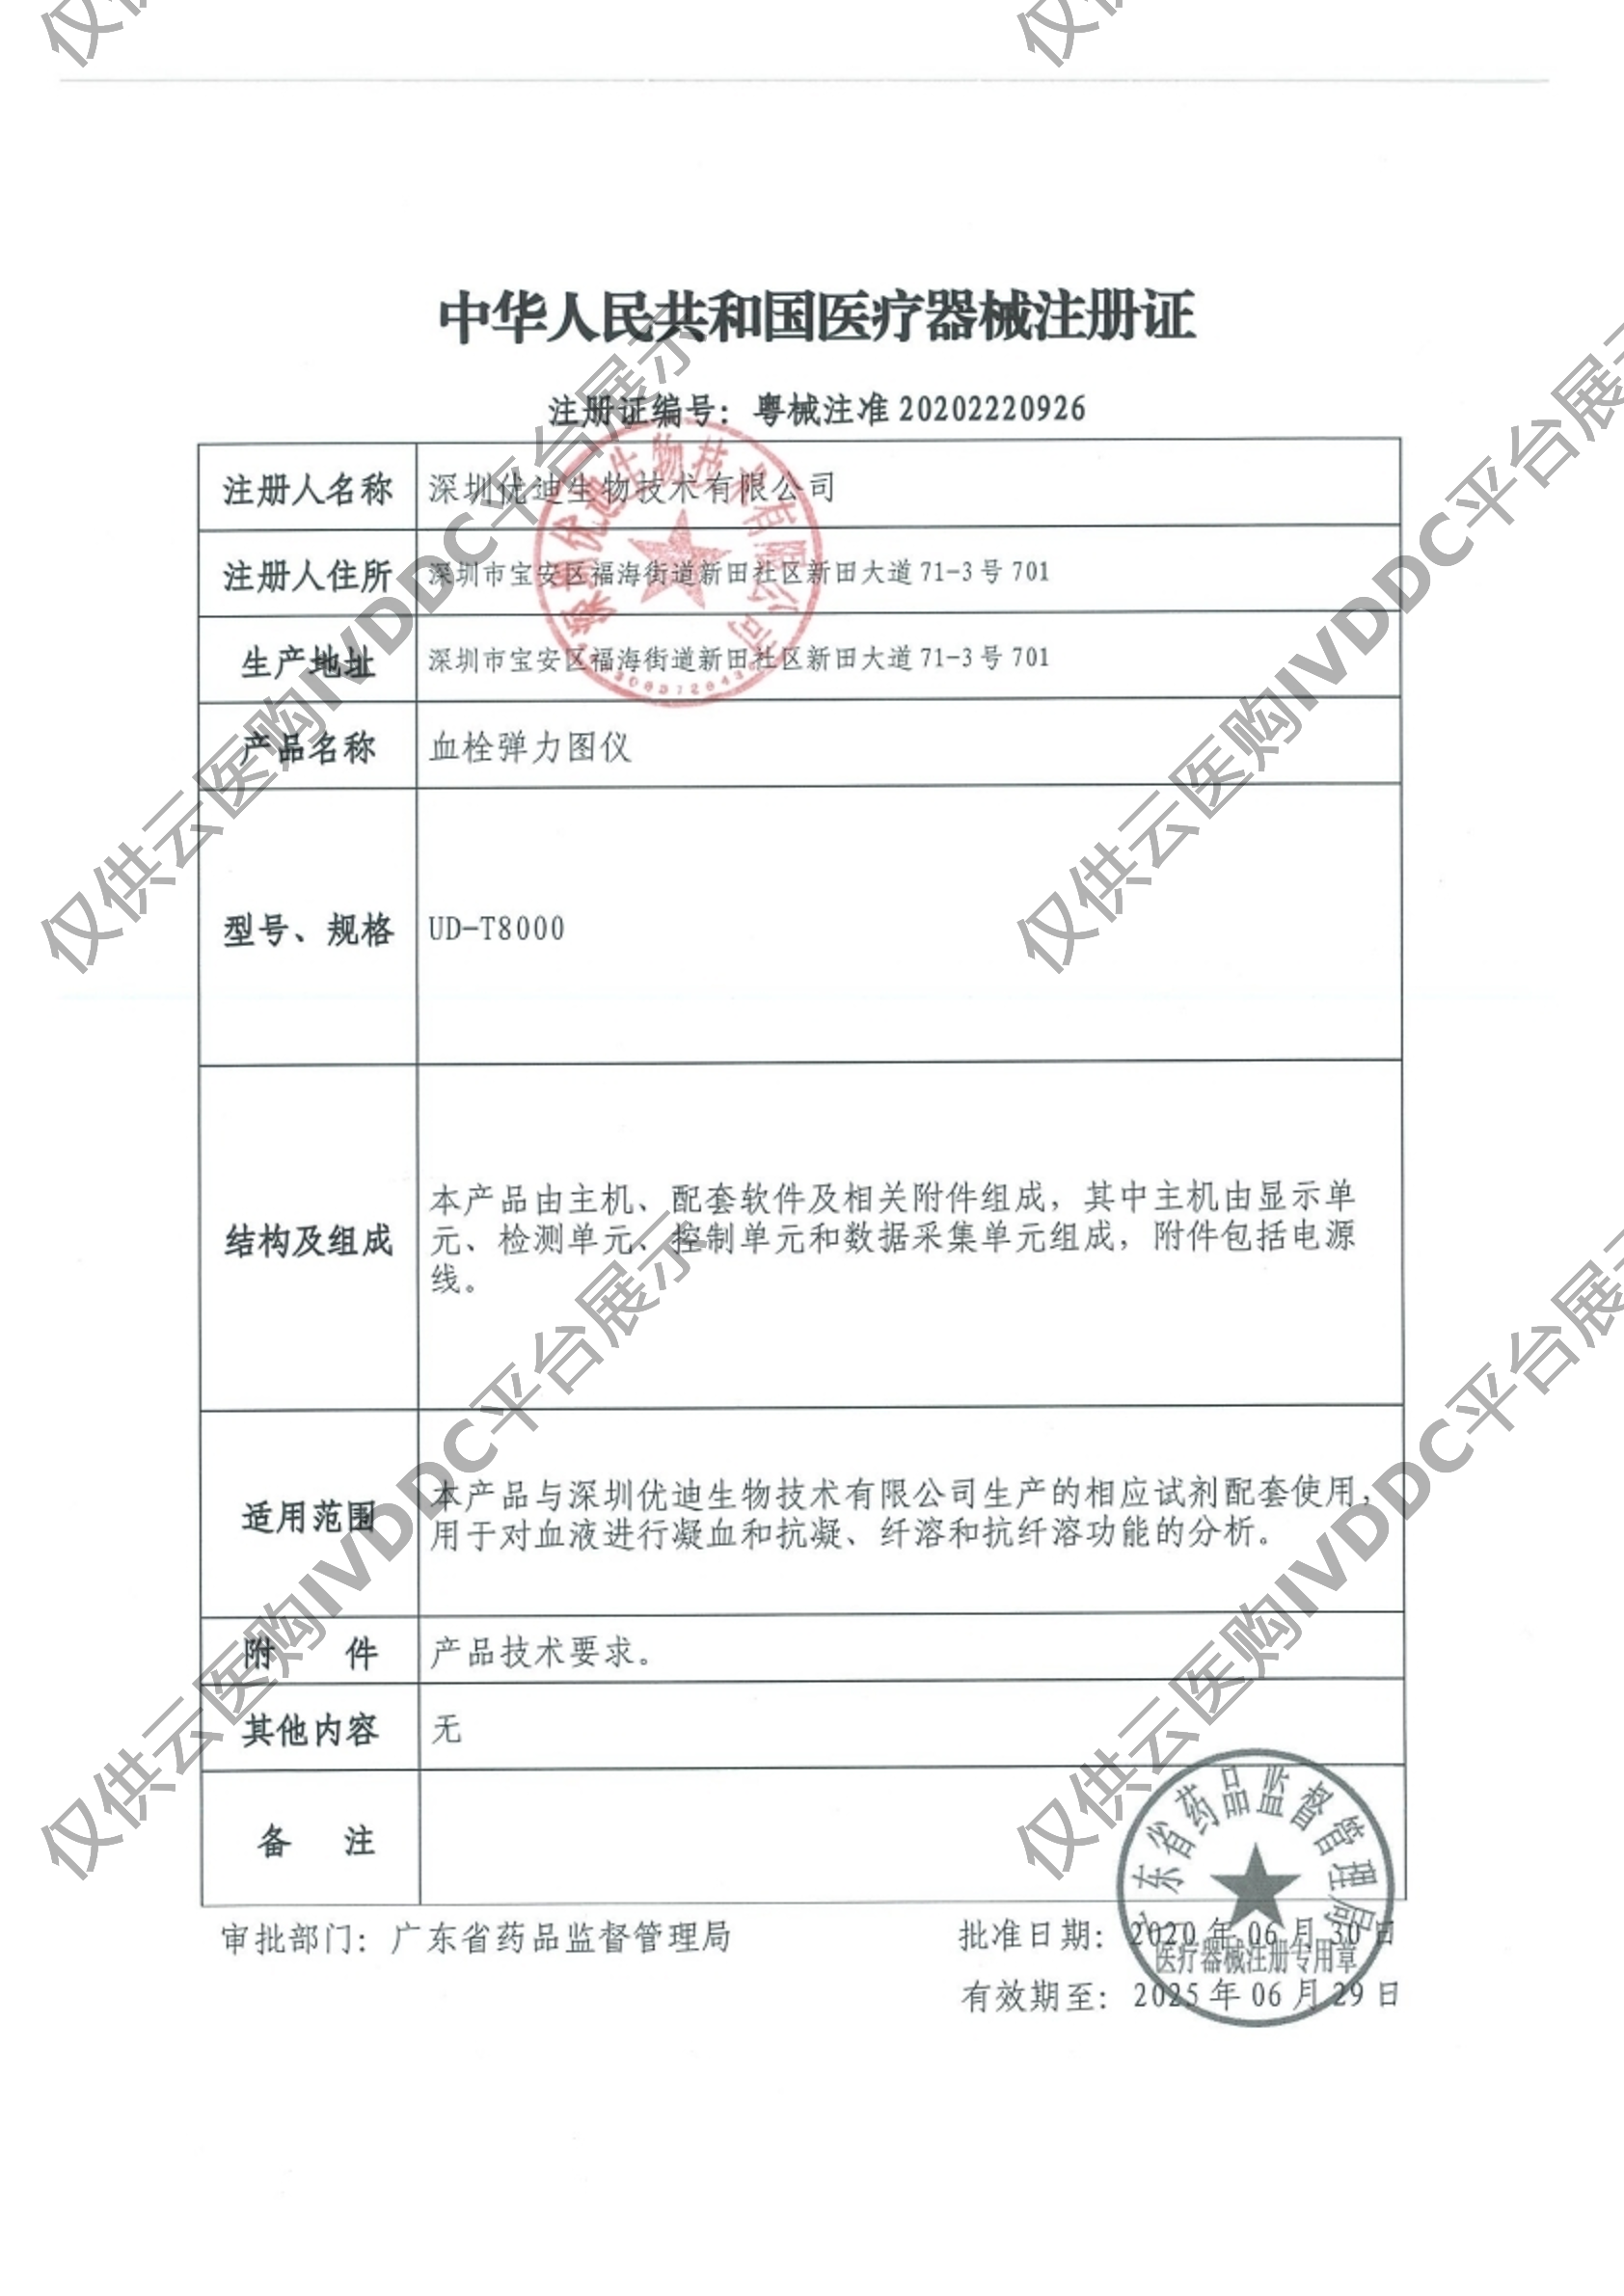 【优迪】血栓弹力图仪UD-T8000注册证